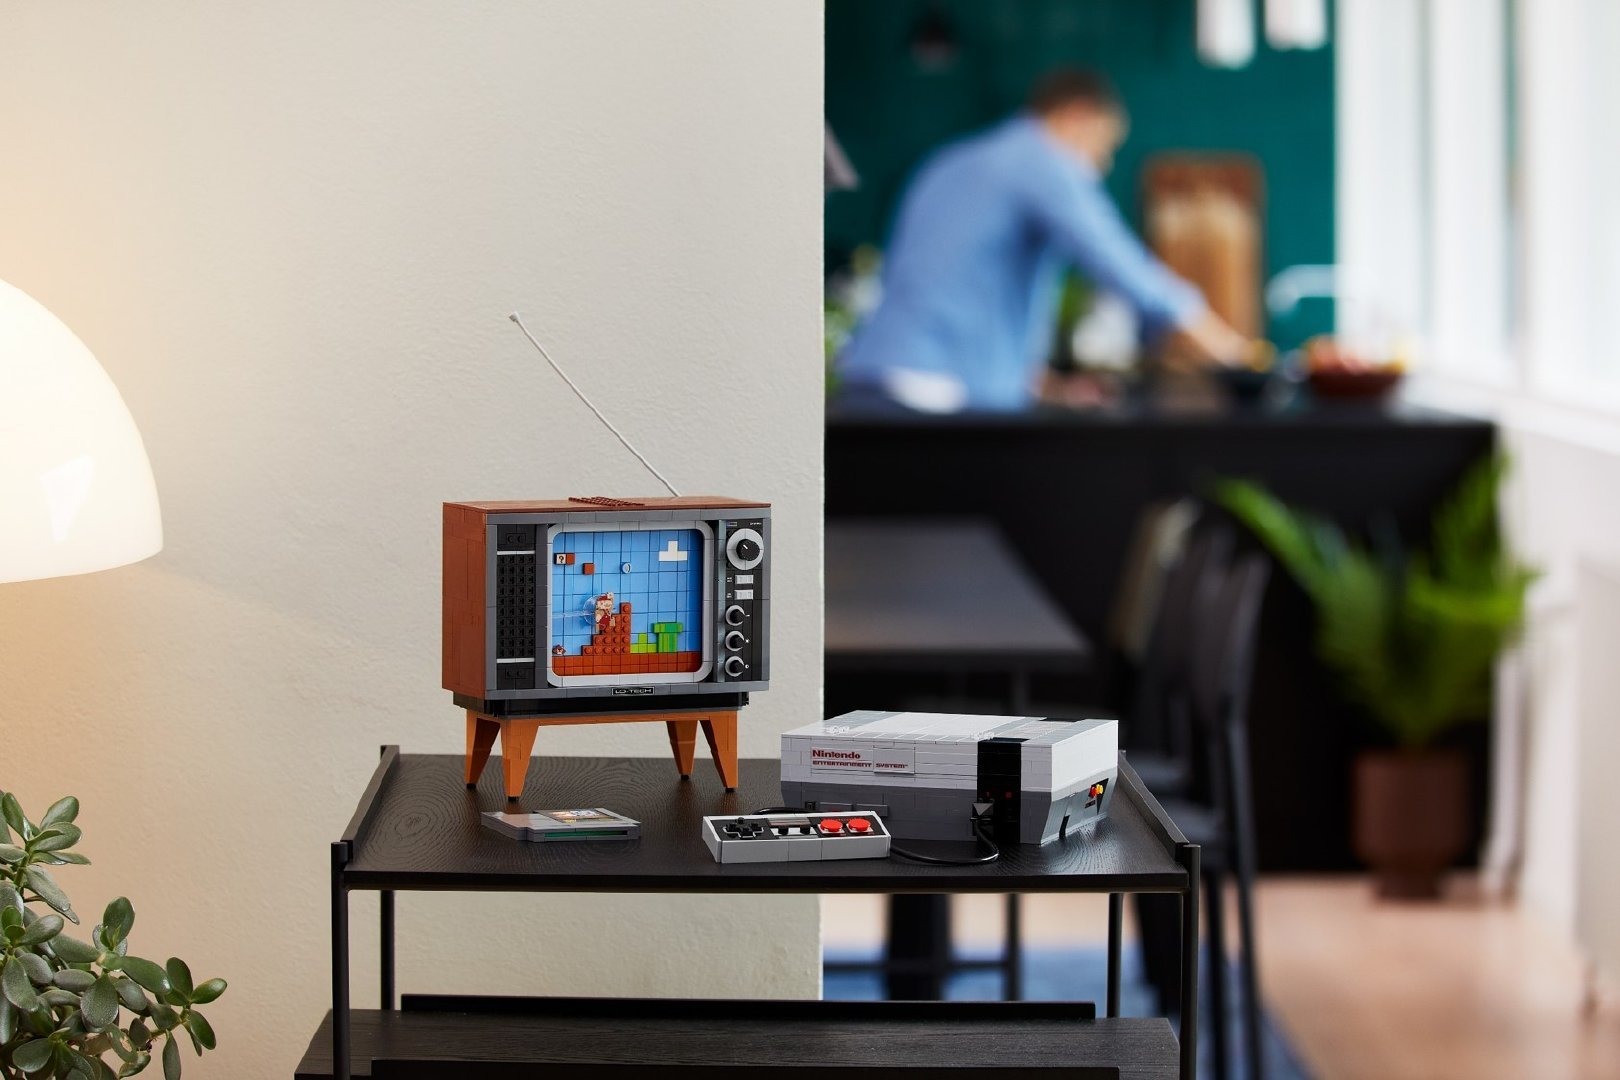 乐高NES套装首个预告视频公开 8月1日发售(乐高nerf)